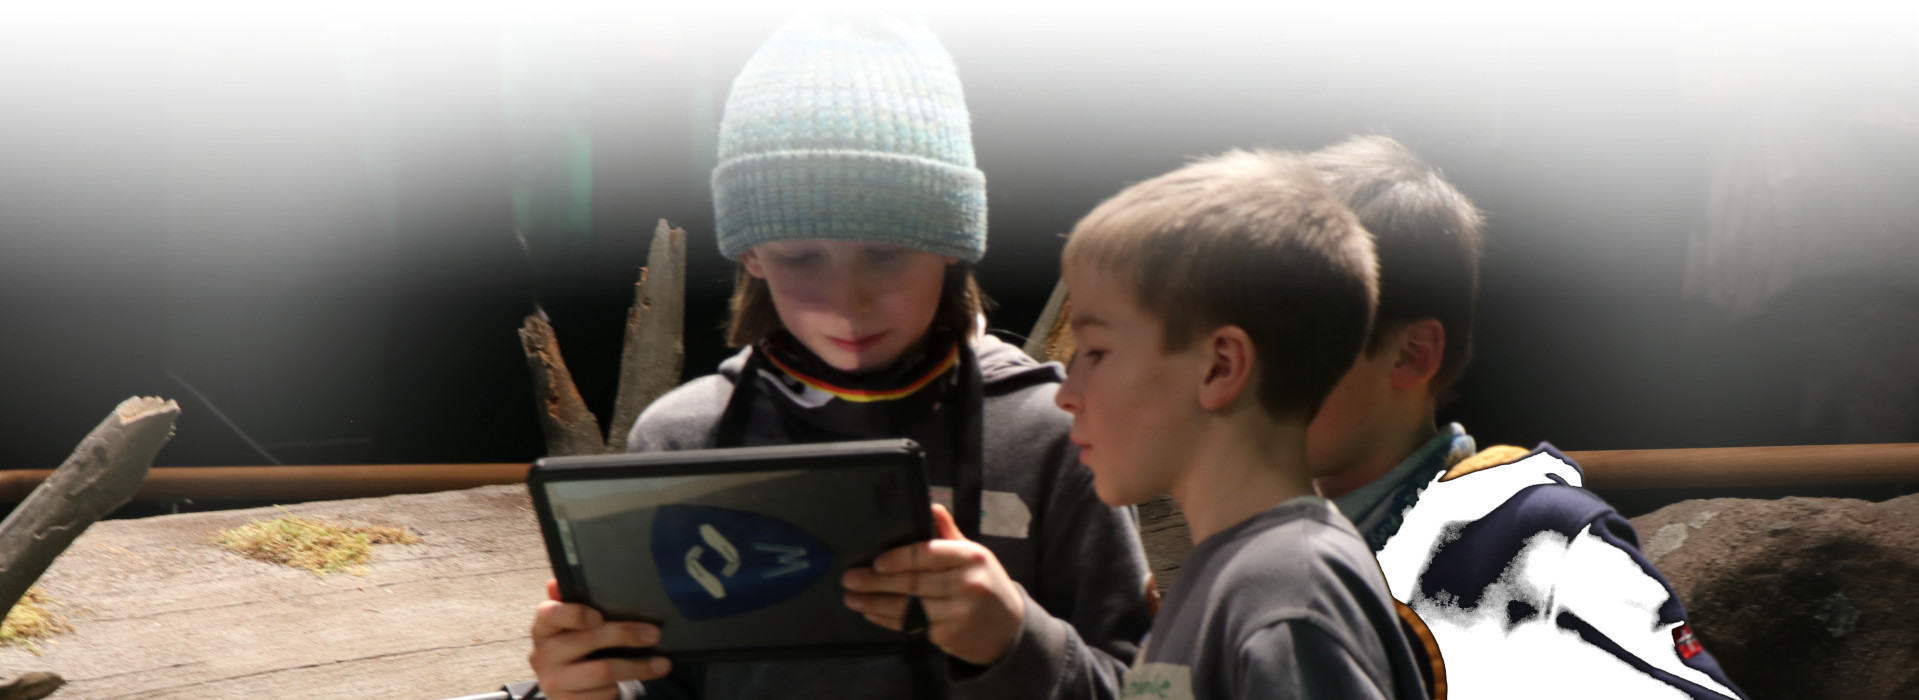 Drei Kinder schauen auf ein Tablet. Dahinter ist ein Baumstamm. Sie befinden sich in einer Ausstellung.